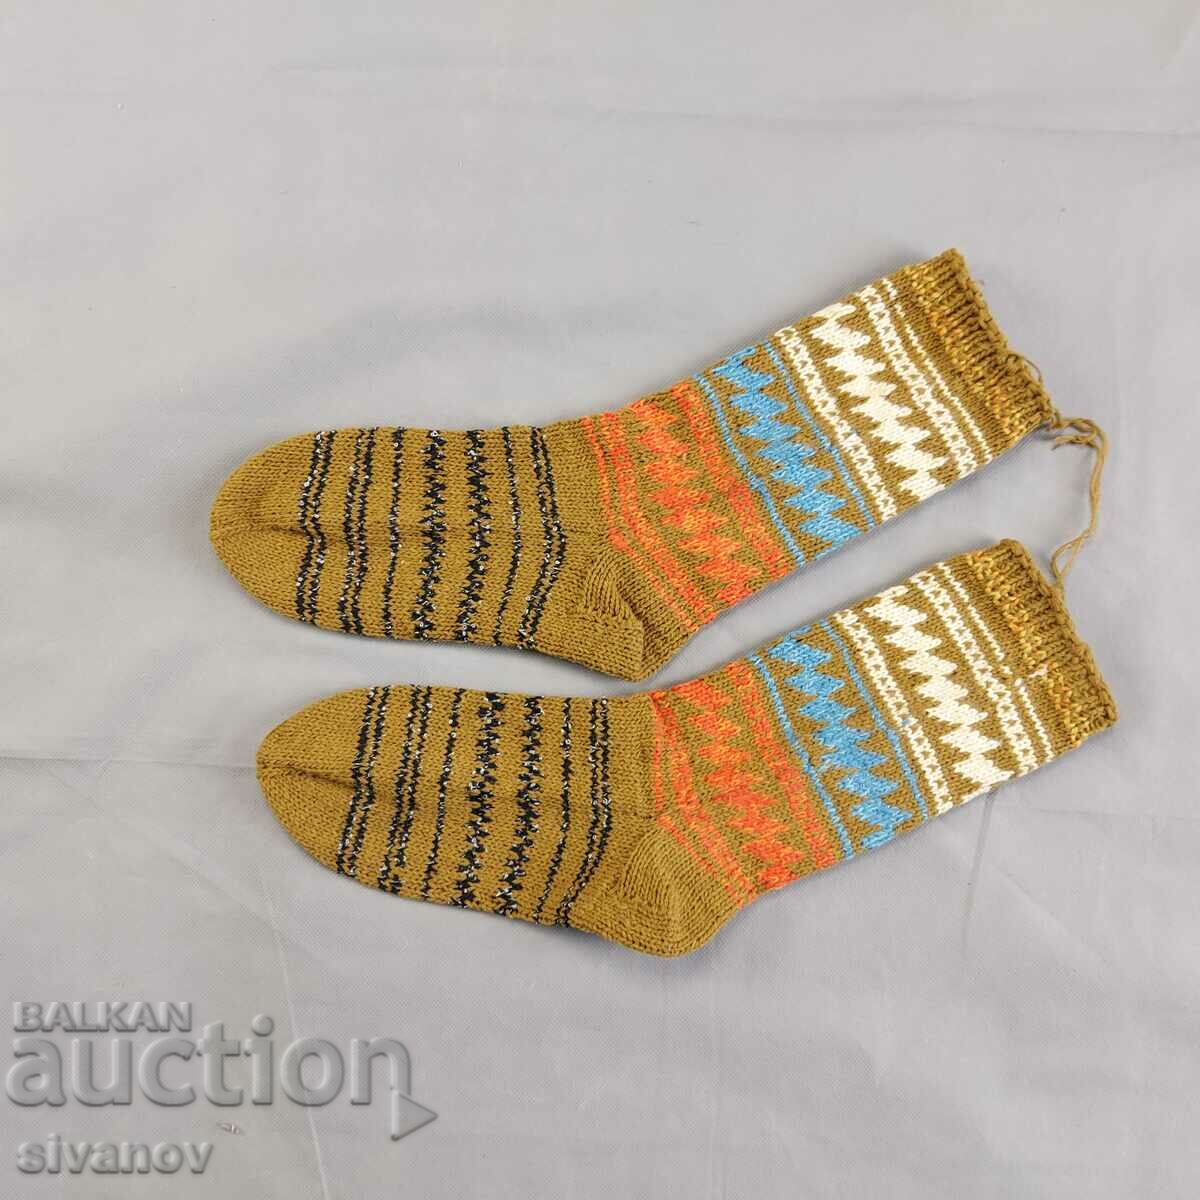 Μάλλινες κάλτσες για έθνικ φολκλόρ φορεσιά #2352